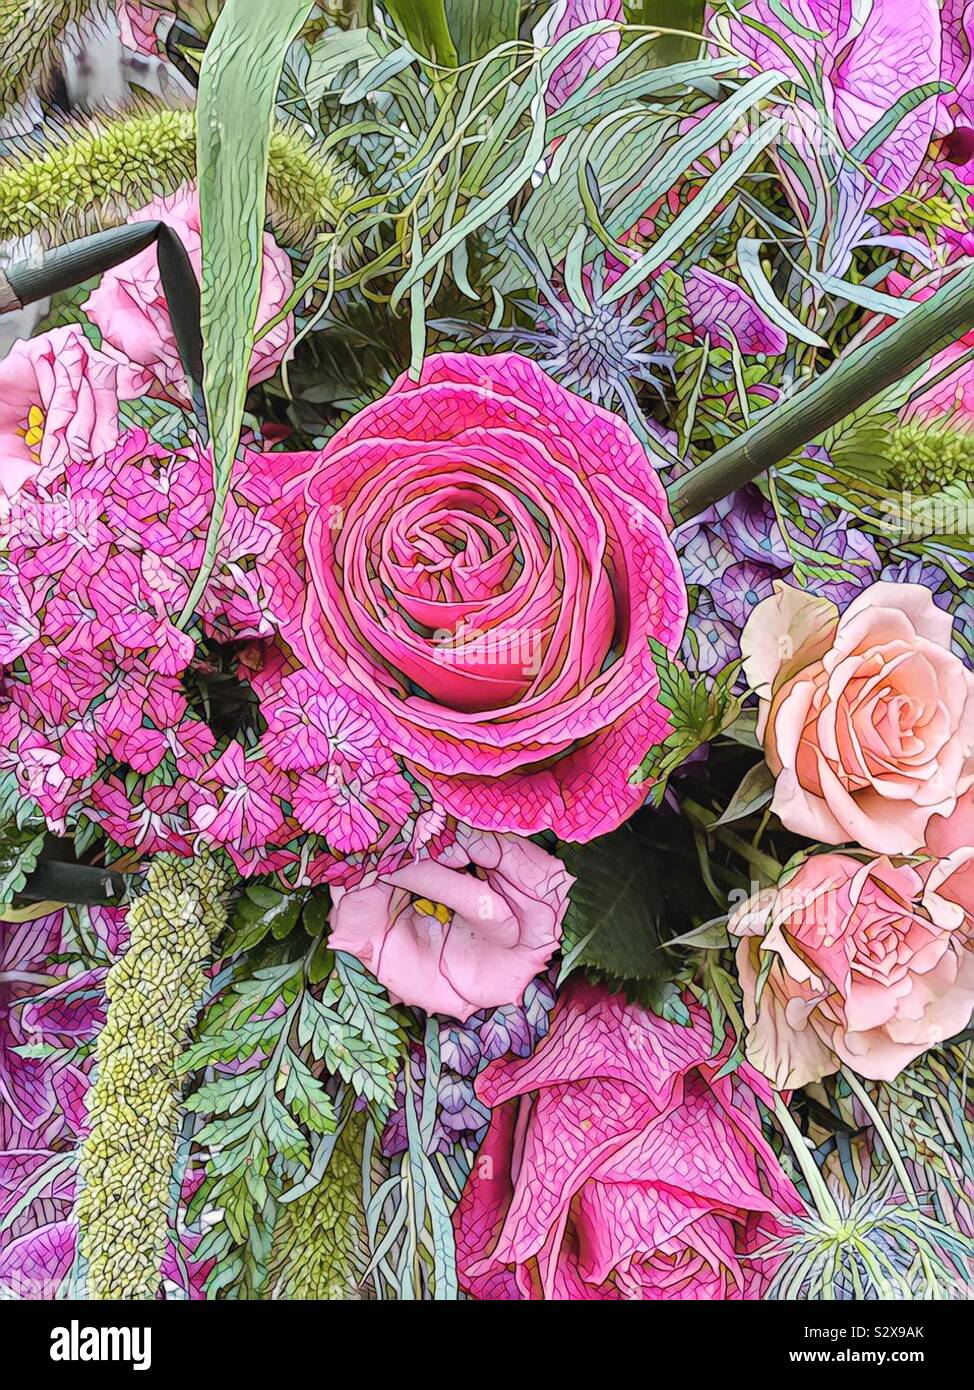 Mosaico di un bel bouquet di rose rosa in piena fioritura e altri fiori di colore rosa con uno sfondo verde fogliame. Foto Stock